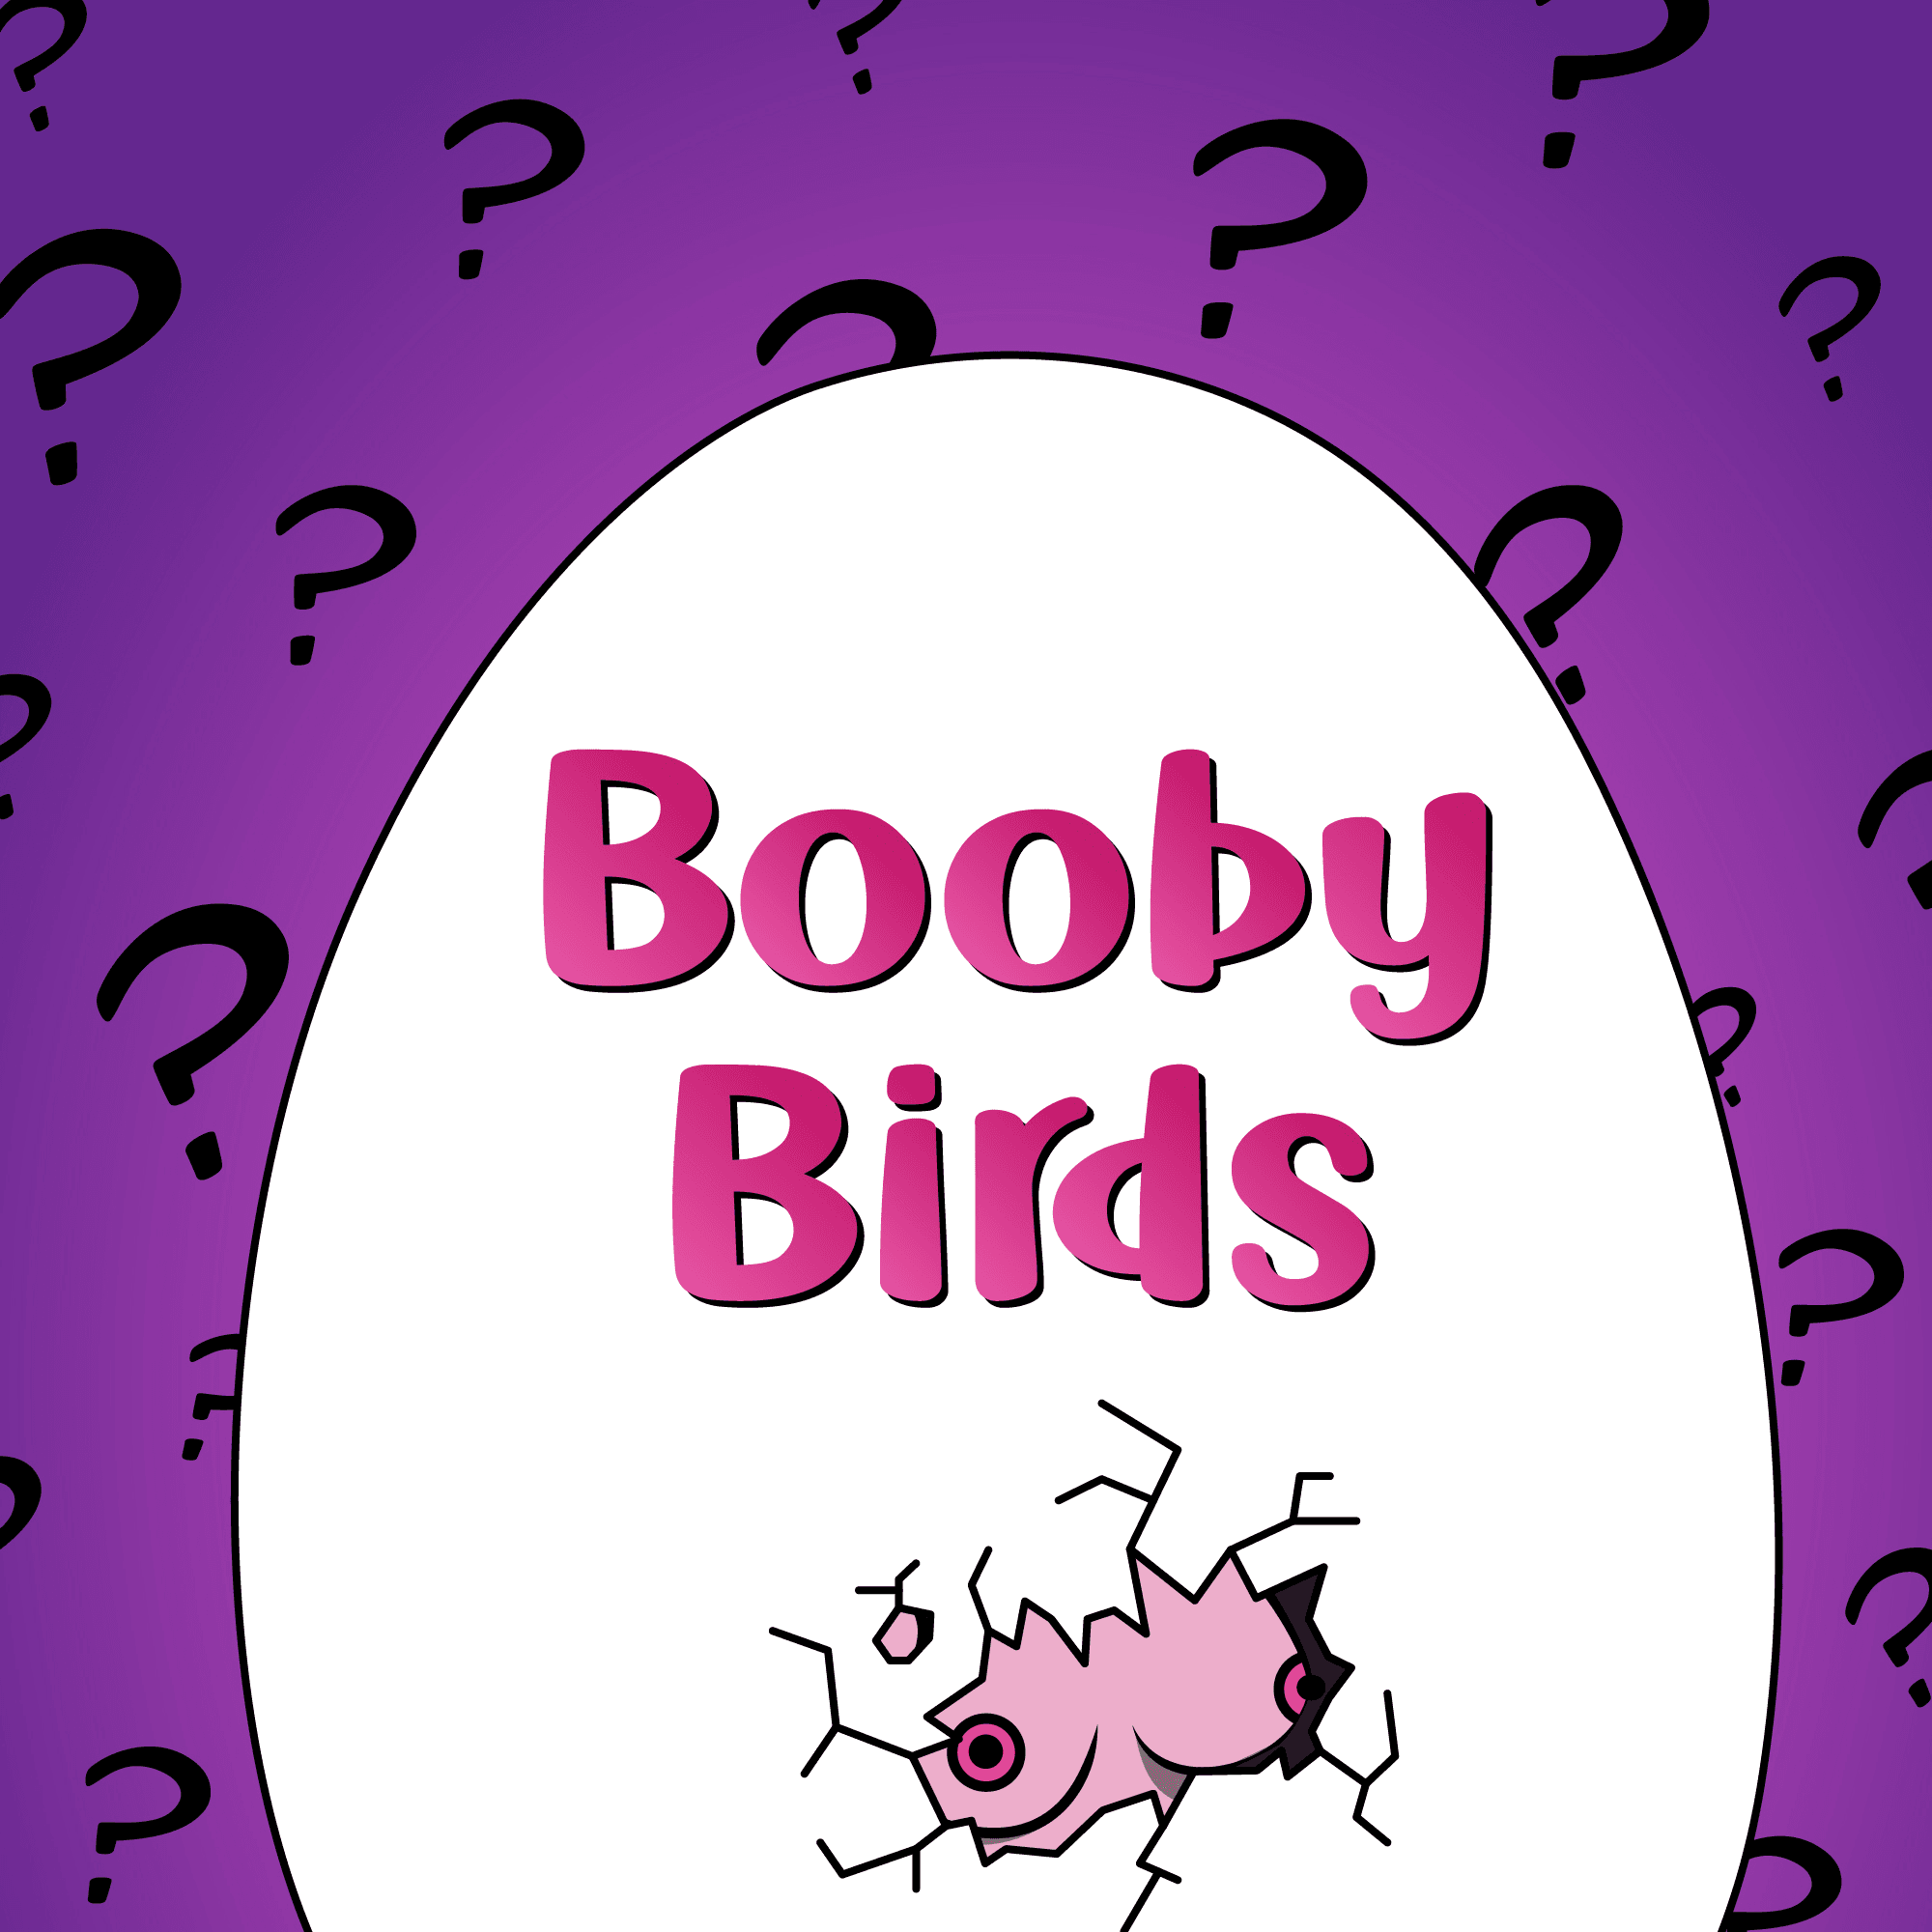 Bird Boobies Hidden